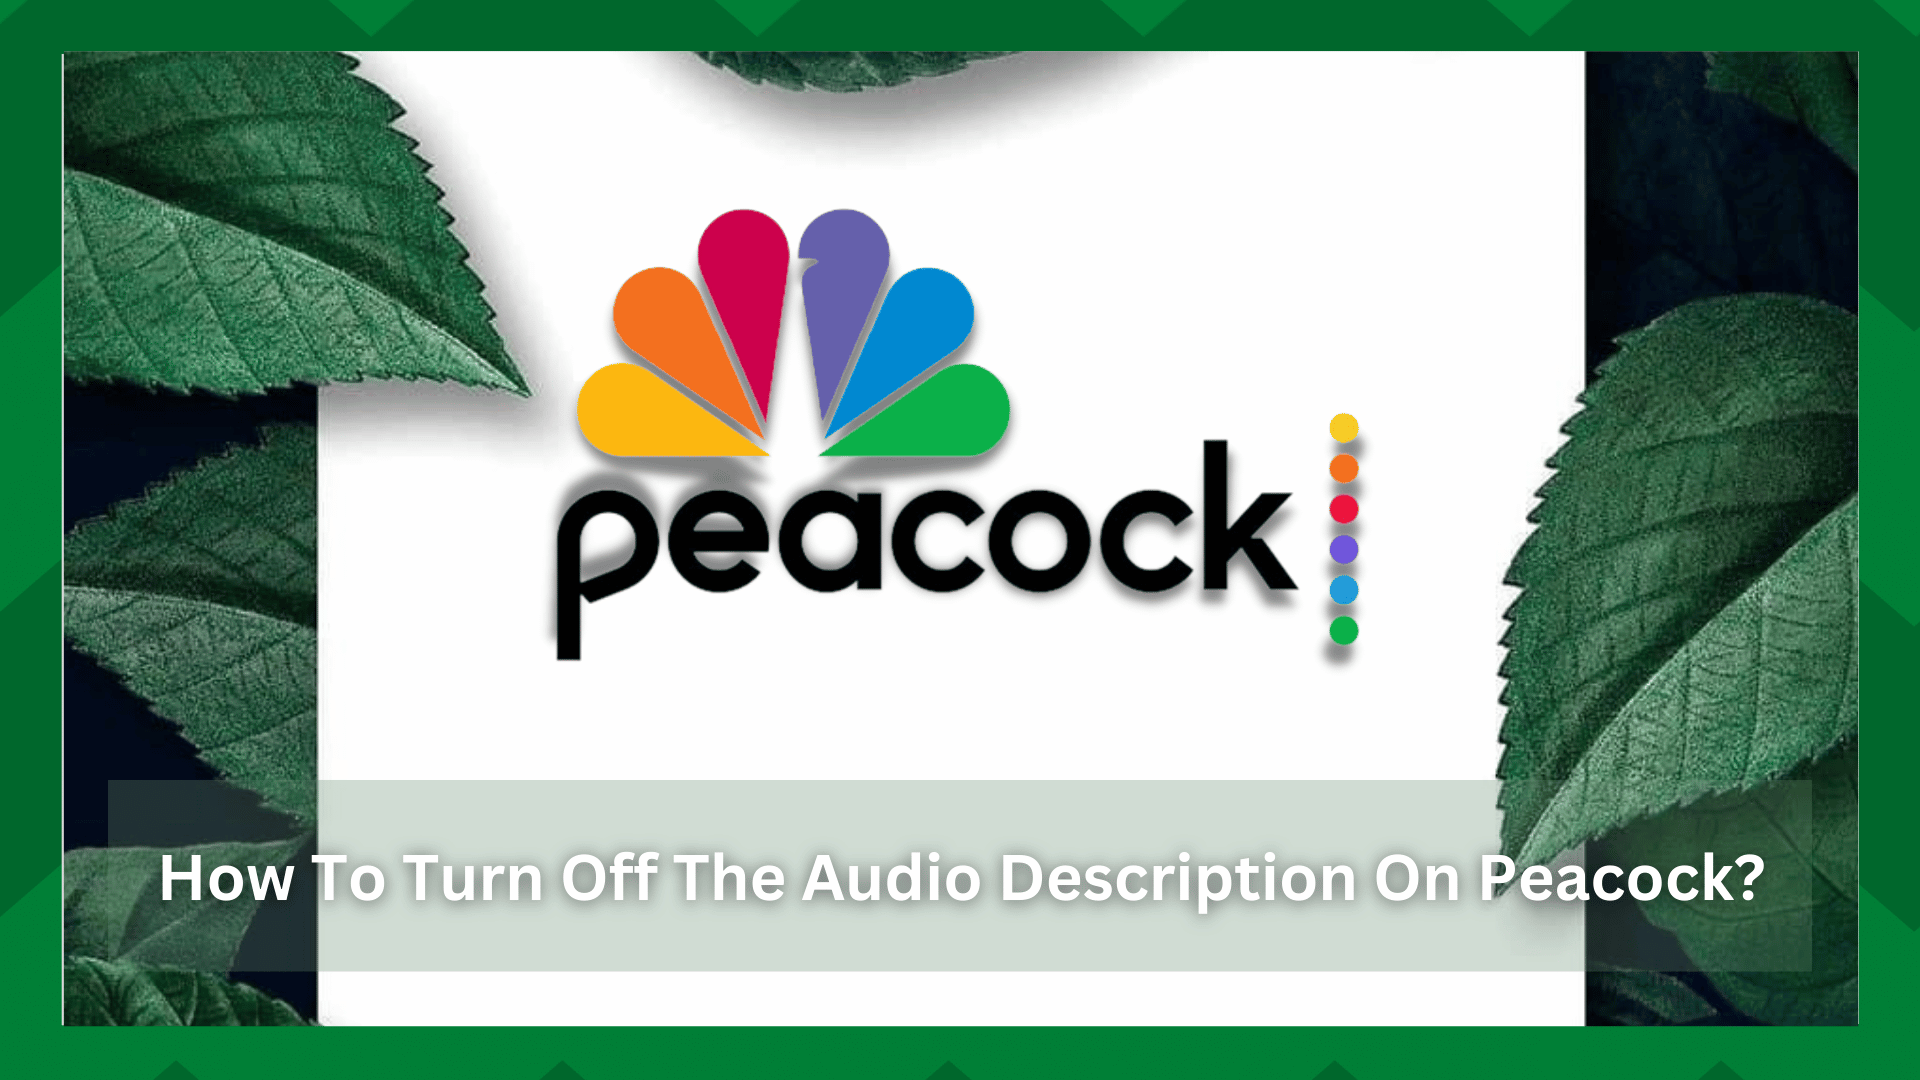 Peacock တွင် အသံဖော်ပြချက်ကို ပိတ်ရန် နည်းလမ်း ၅ ခု